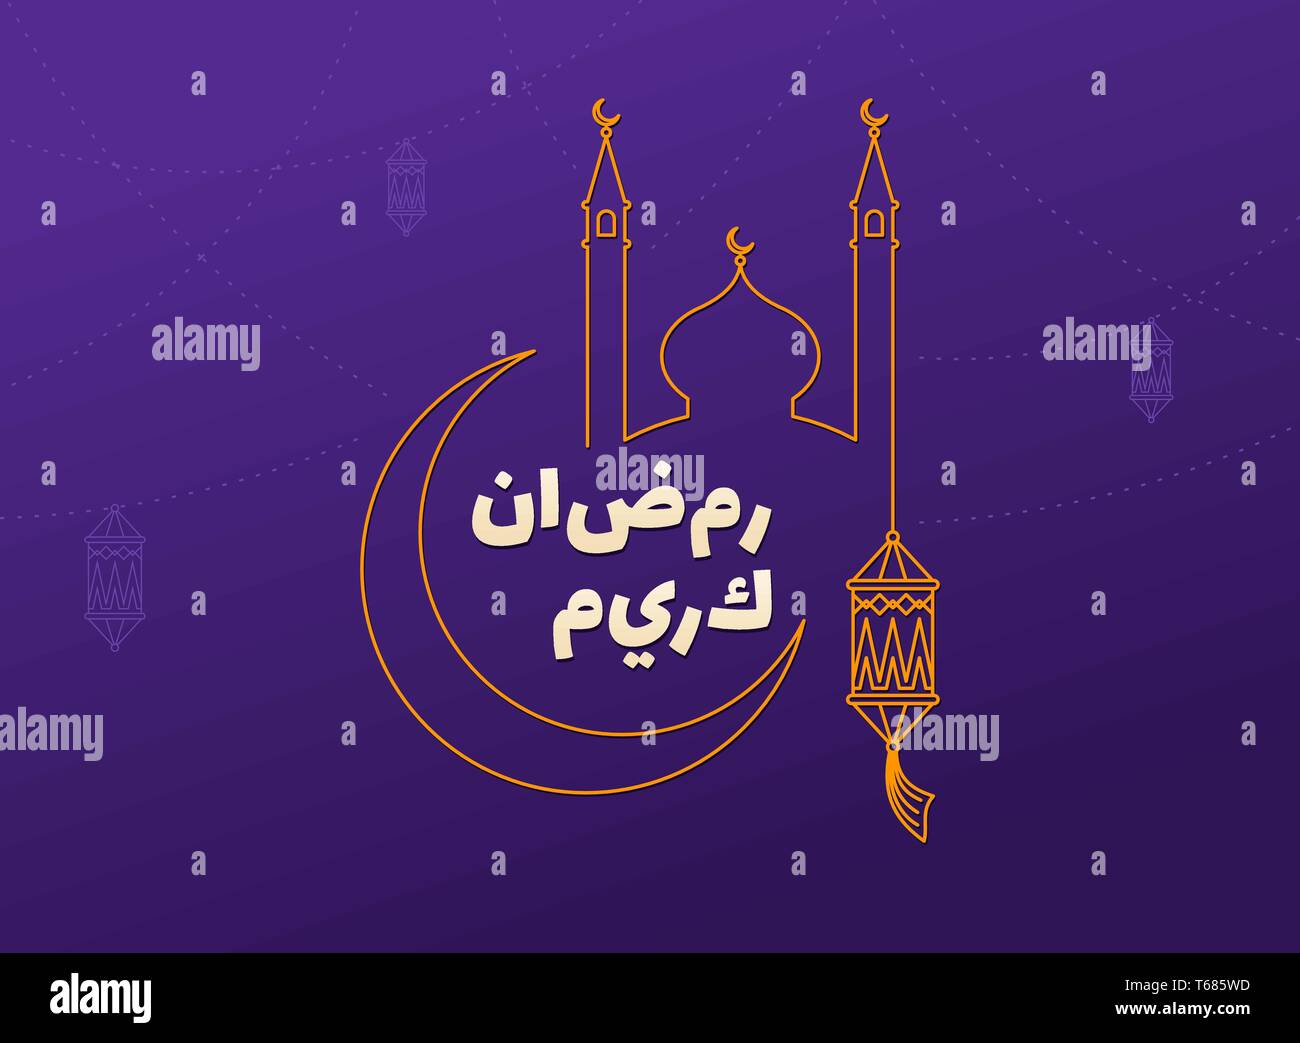 Ramadan Kareem lila Hintergrund mit Mond, Laternen, Moschee. Arabisch islamischen Ramadan Mubarak Grußkarte, Einladung für die muslimische Gemeinschaft Festival. K Stock Vektor